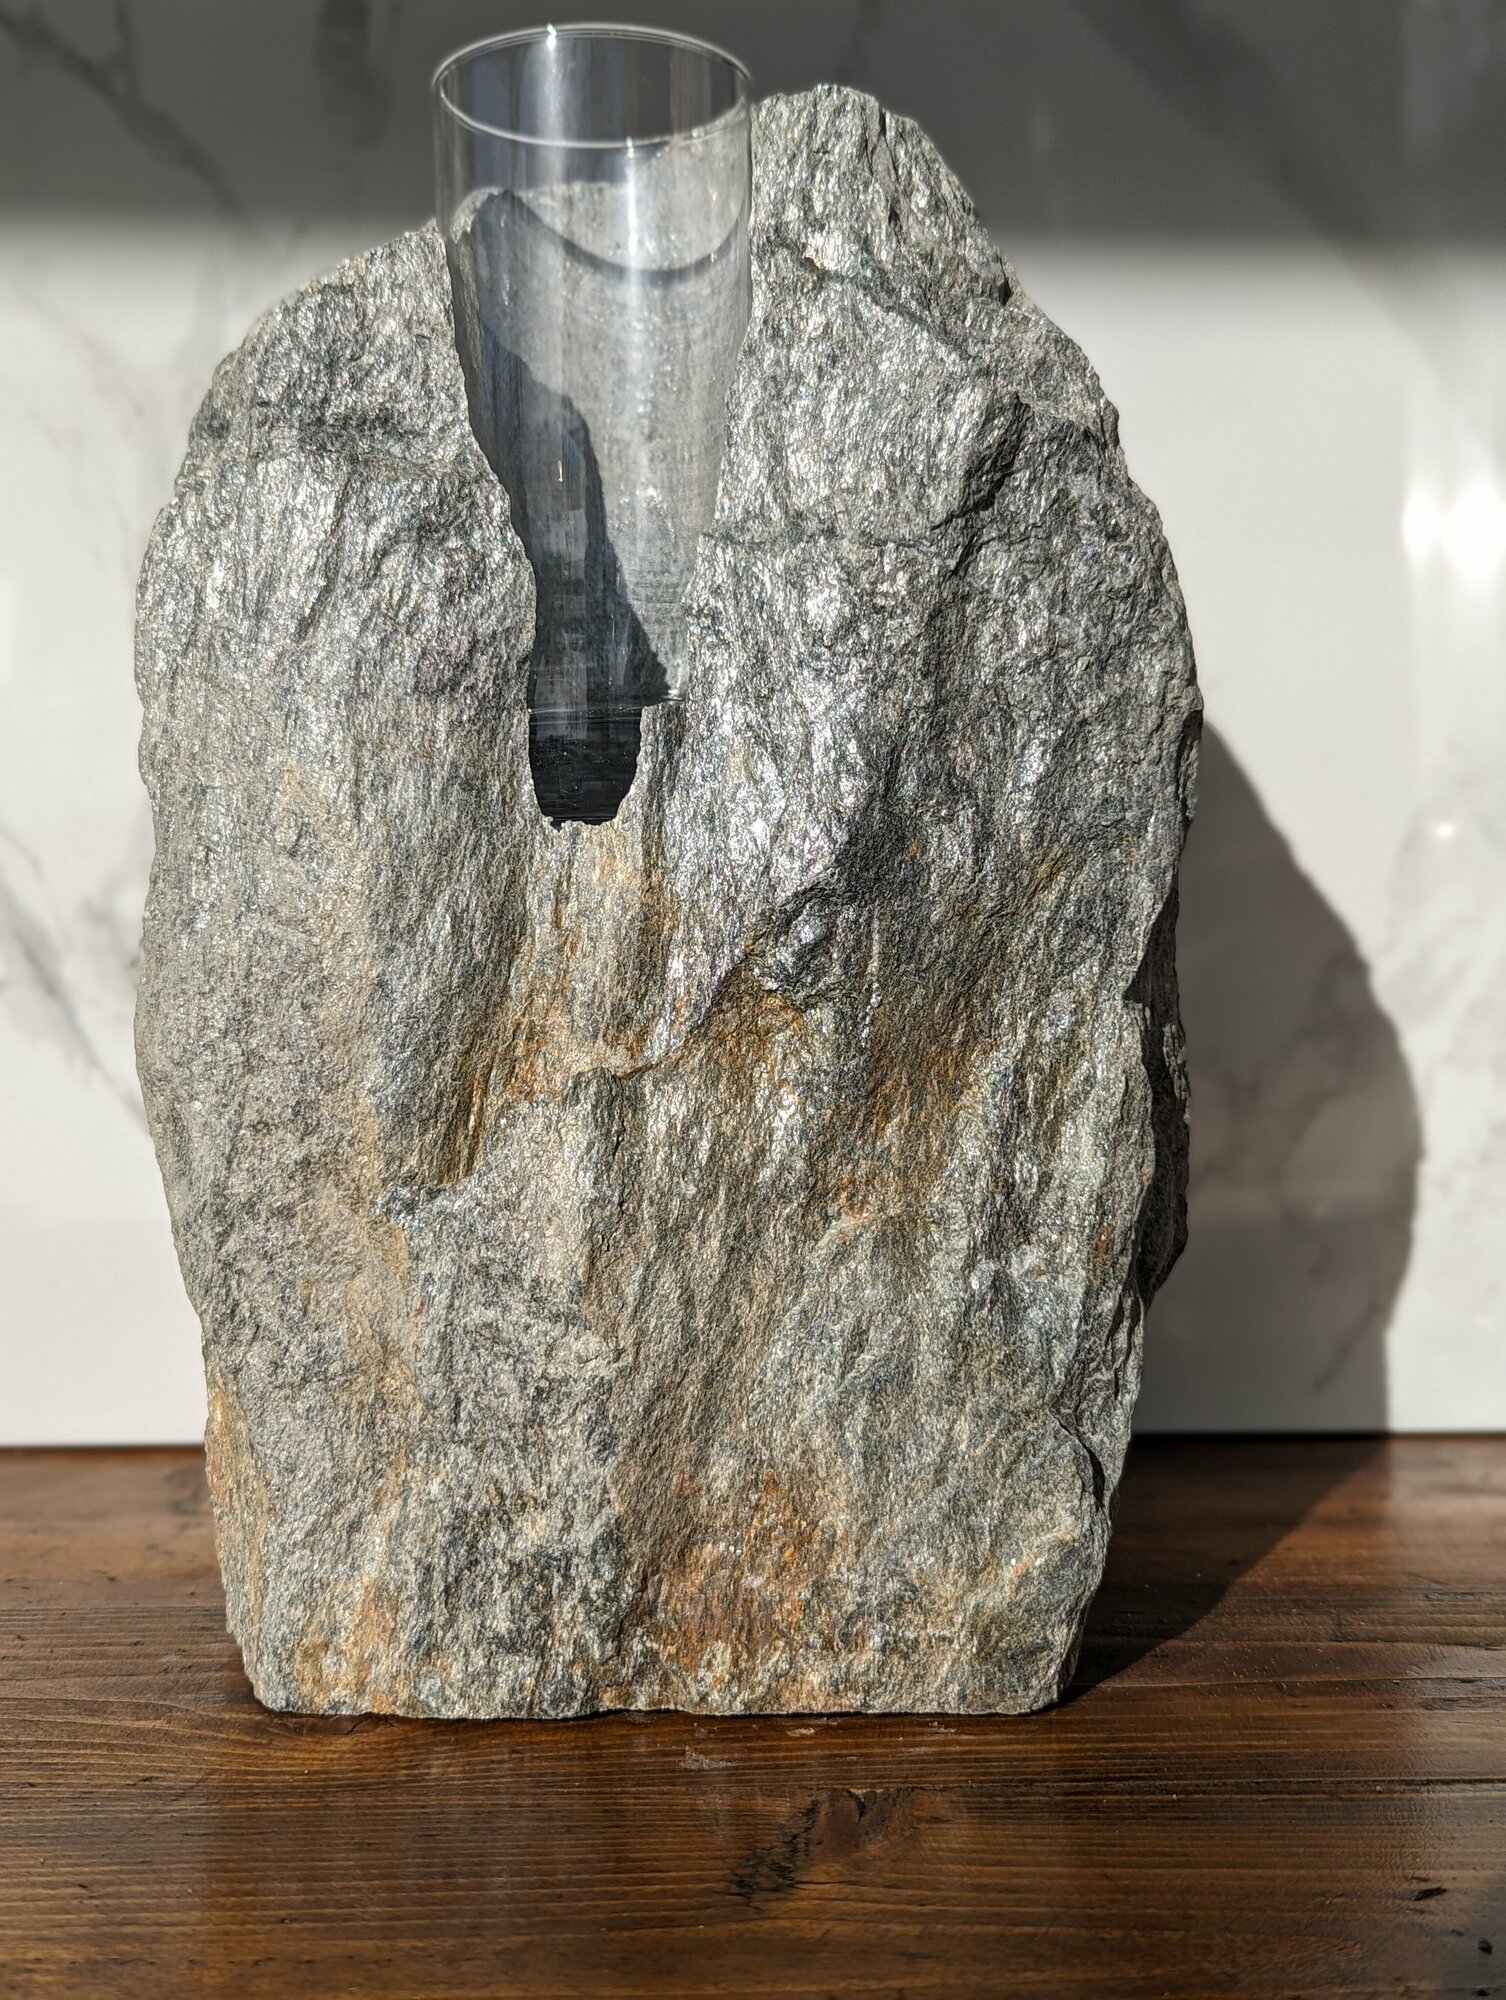 "Ваза Stone Store а6 из натурального камня ручной работы